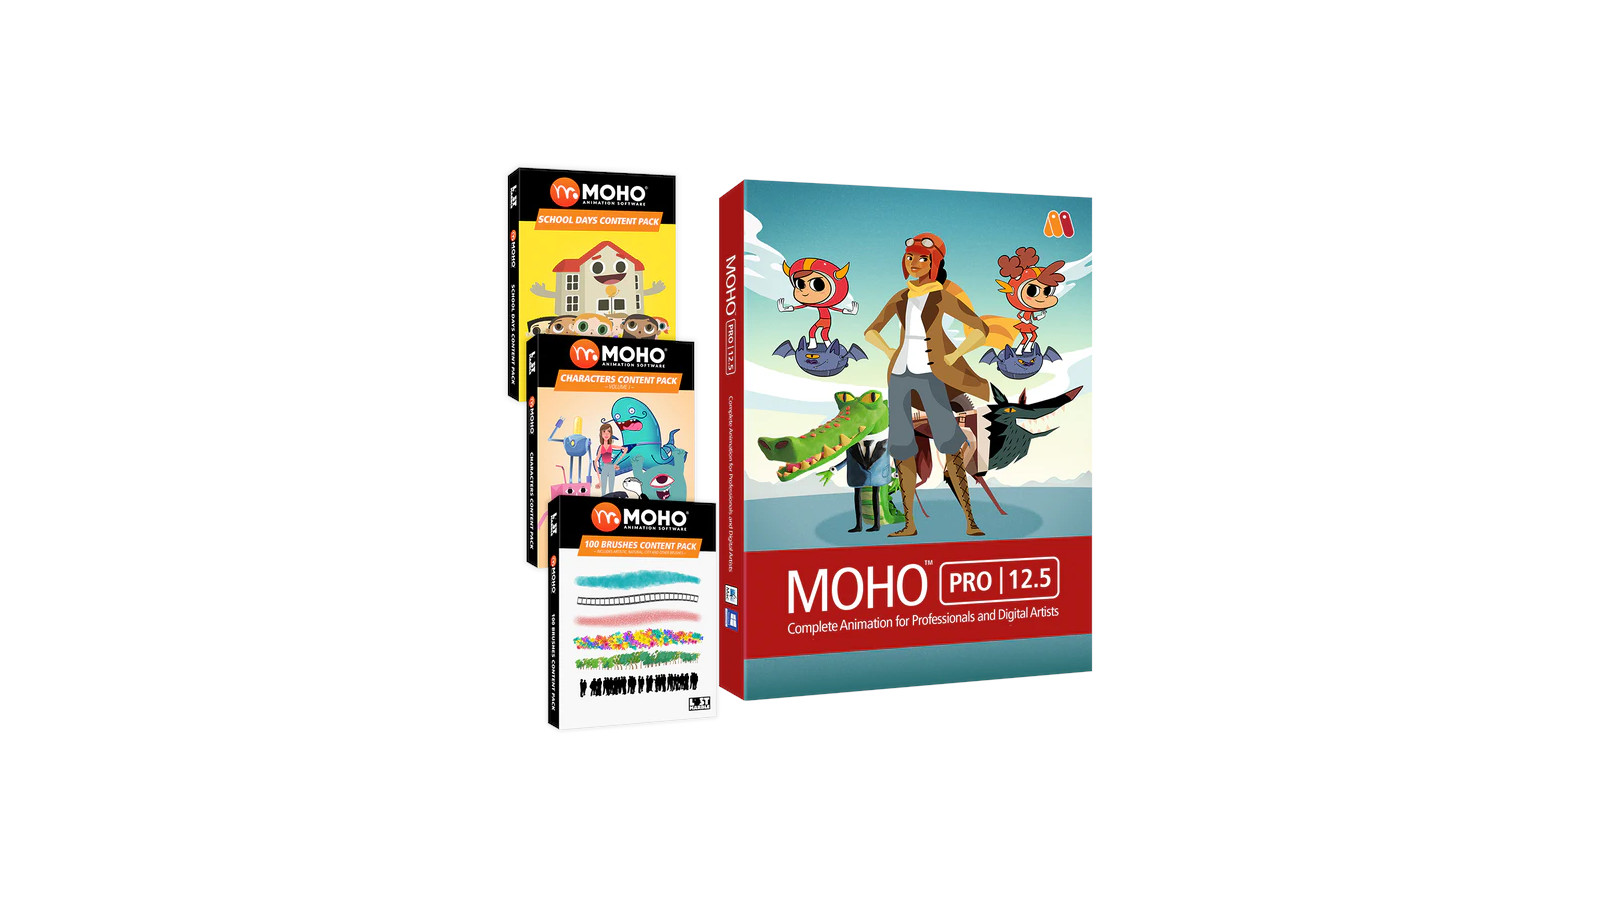 MOHO PRO 12.5 BUNDLE PC/MAC CD Key 386.84$